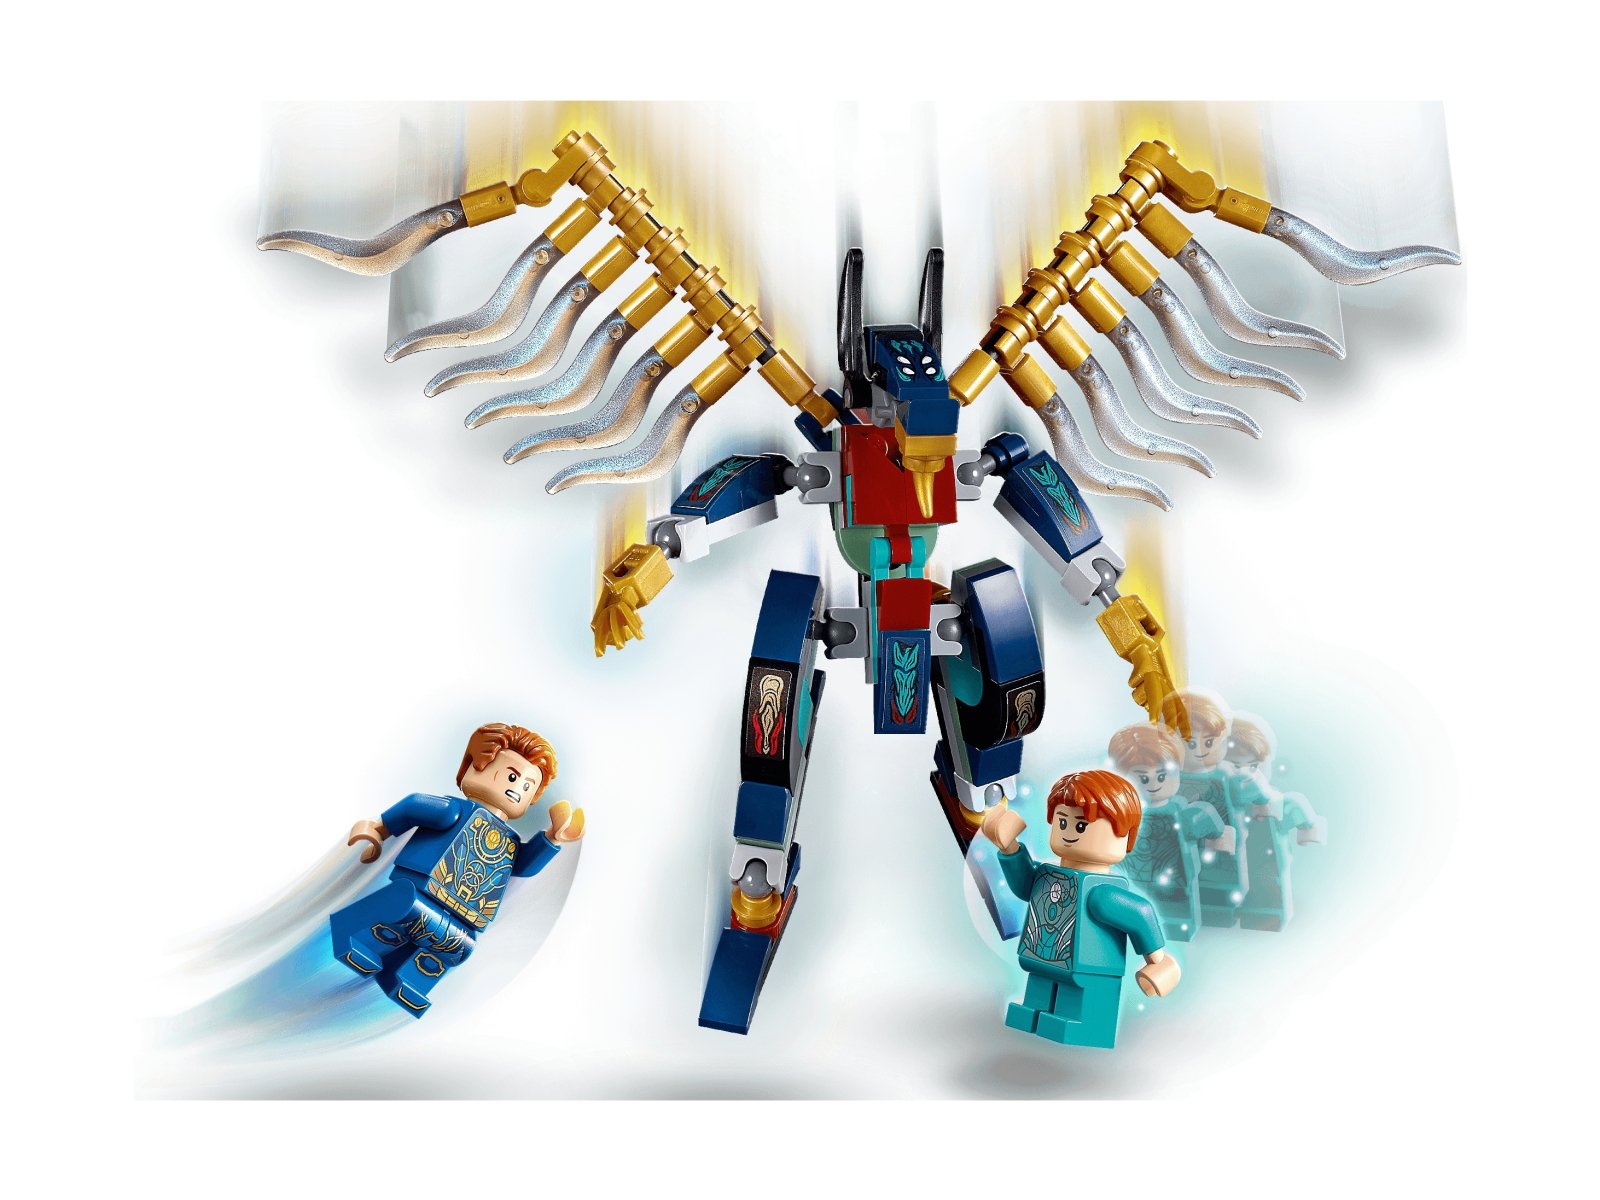 LEGO Marvel 76145 Atak powietrzny Przedwiecznych